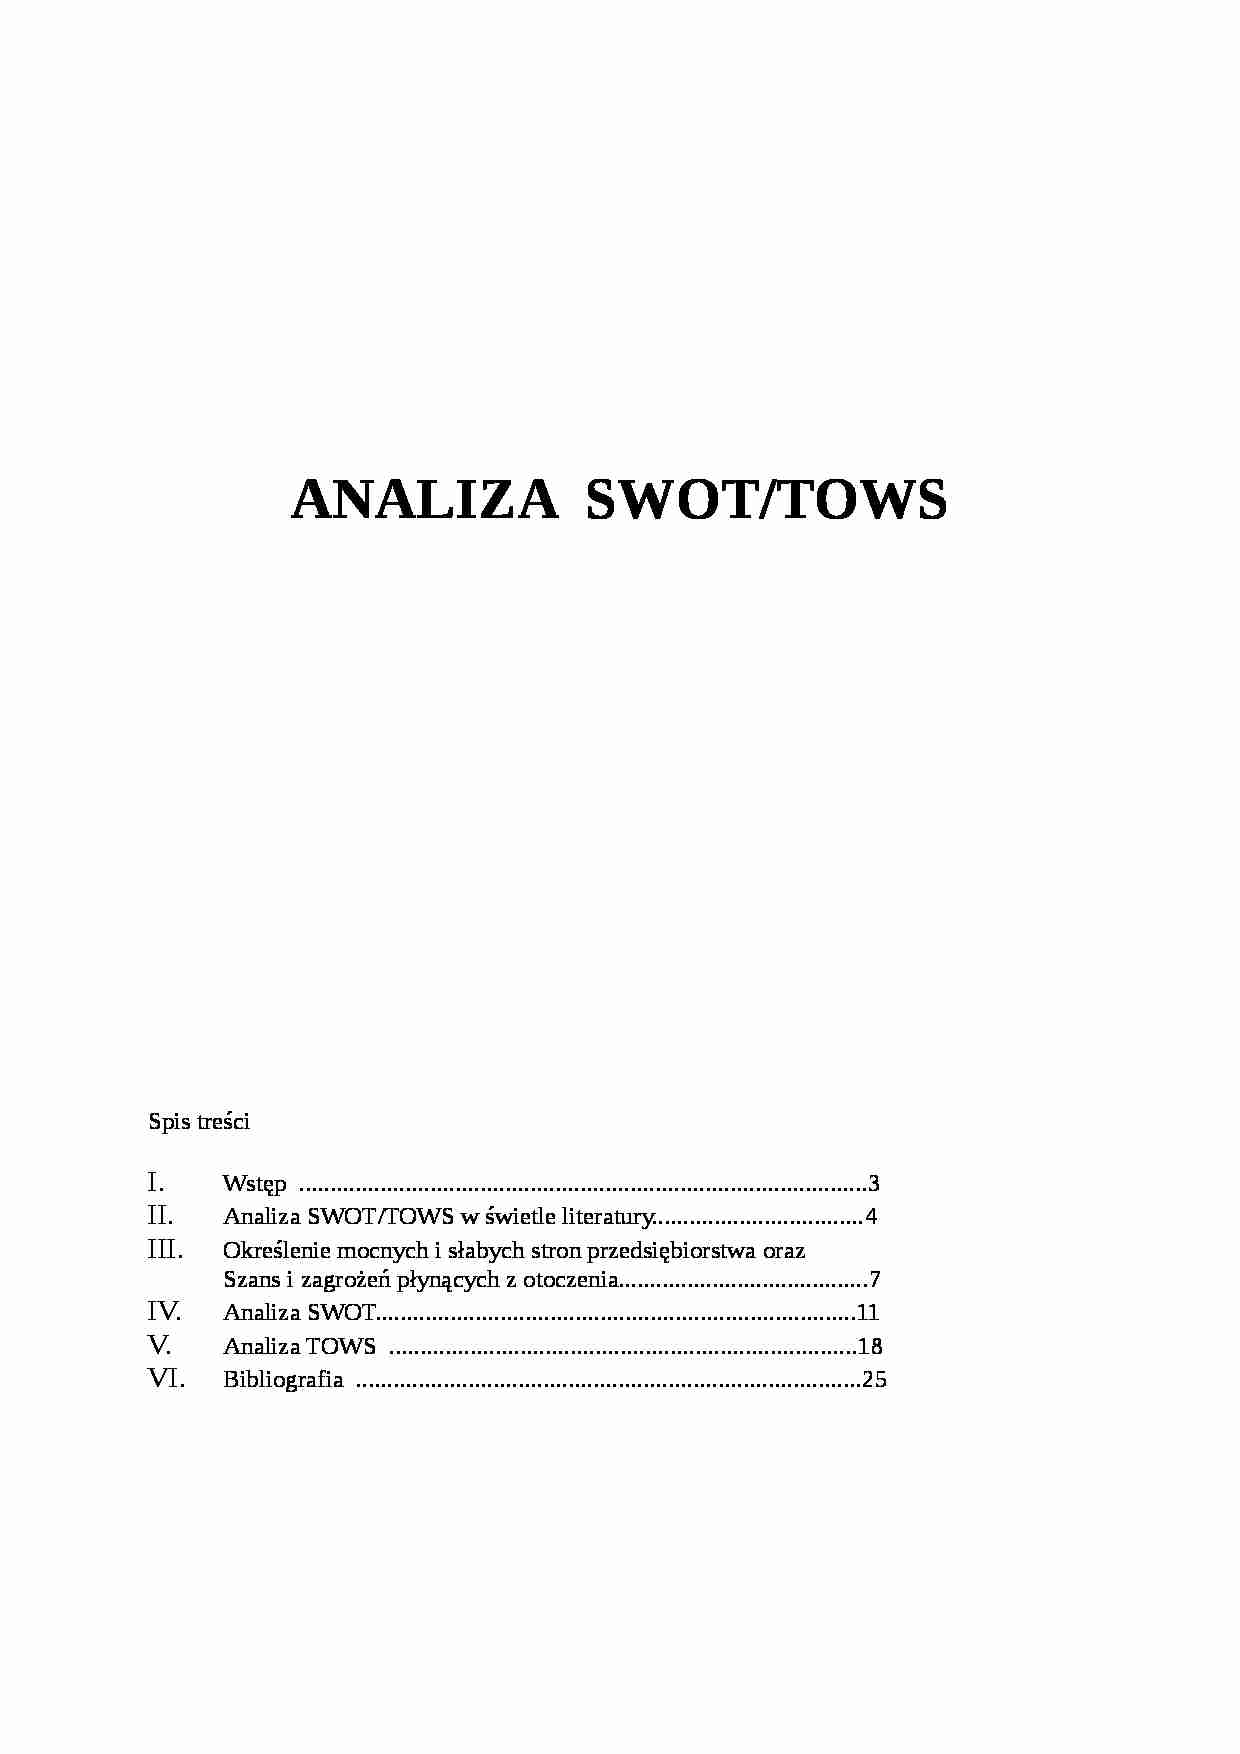 Analiza SWOT, TOWS w świetle literatury - strona 1